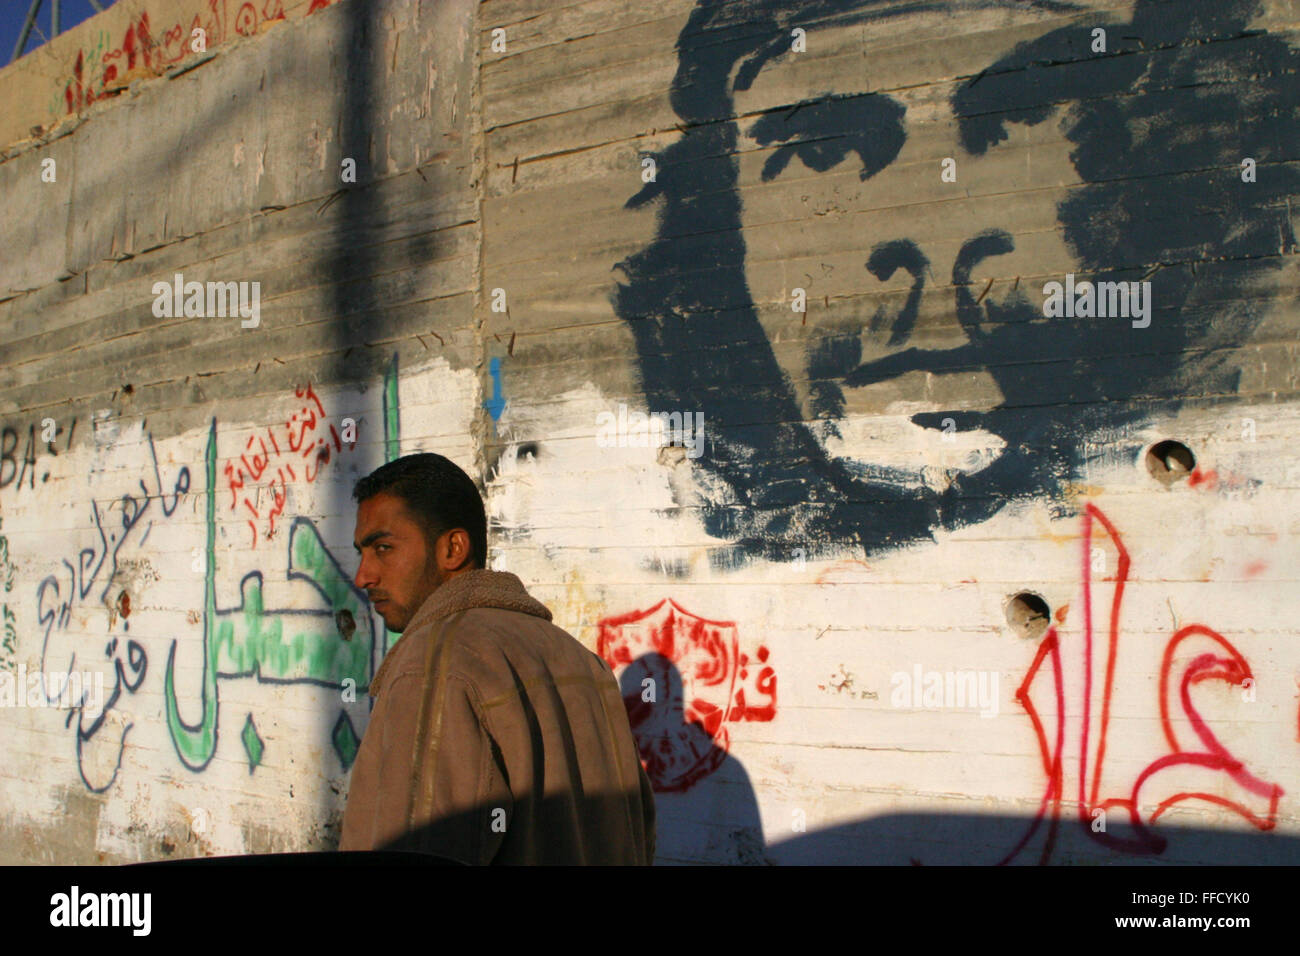 El Che Guevara se ha pintado en la pared. Es una imagen común a lo largo de la pared que separa; Palestina e Israel. Foto de stock